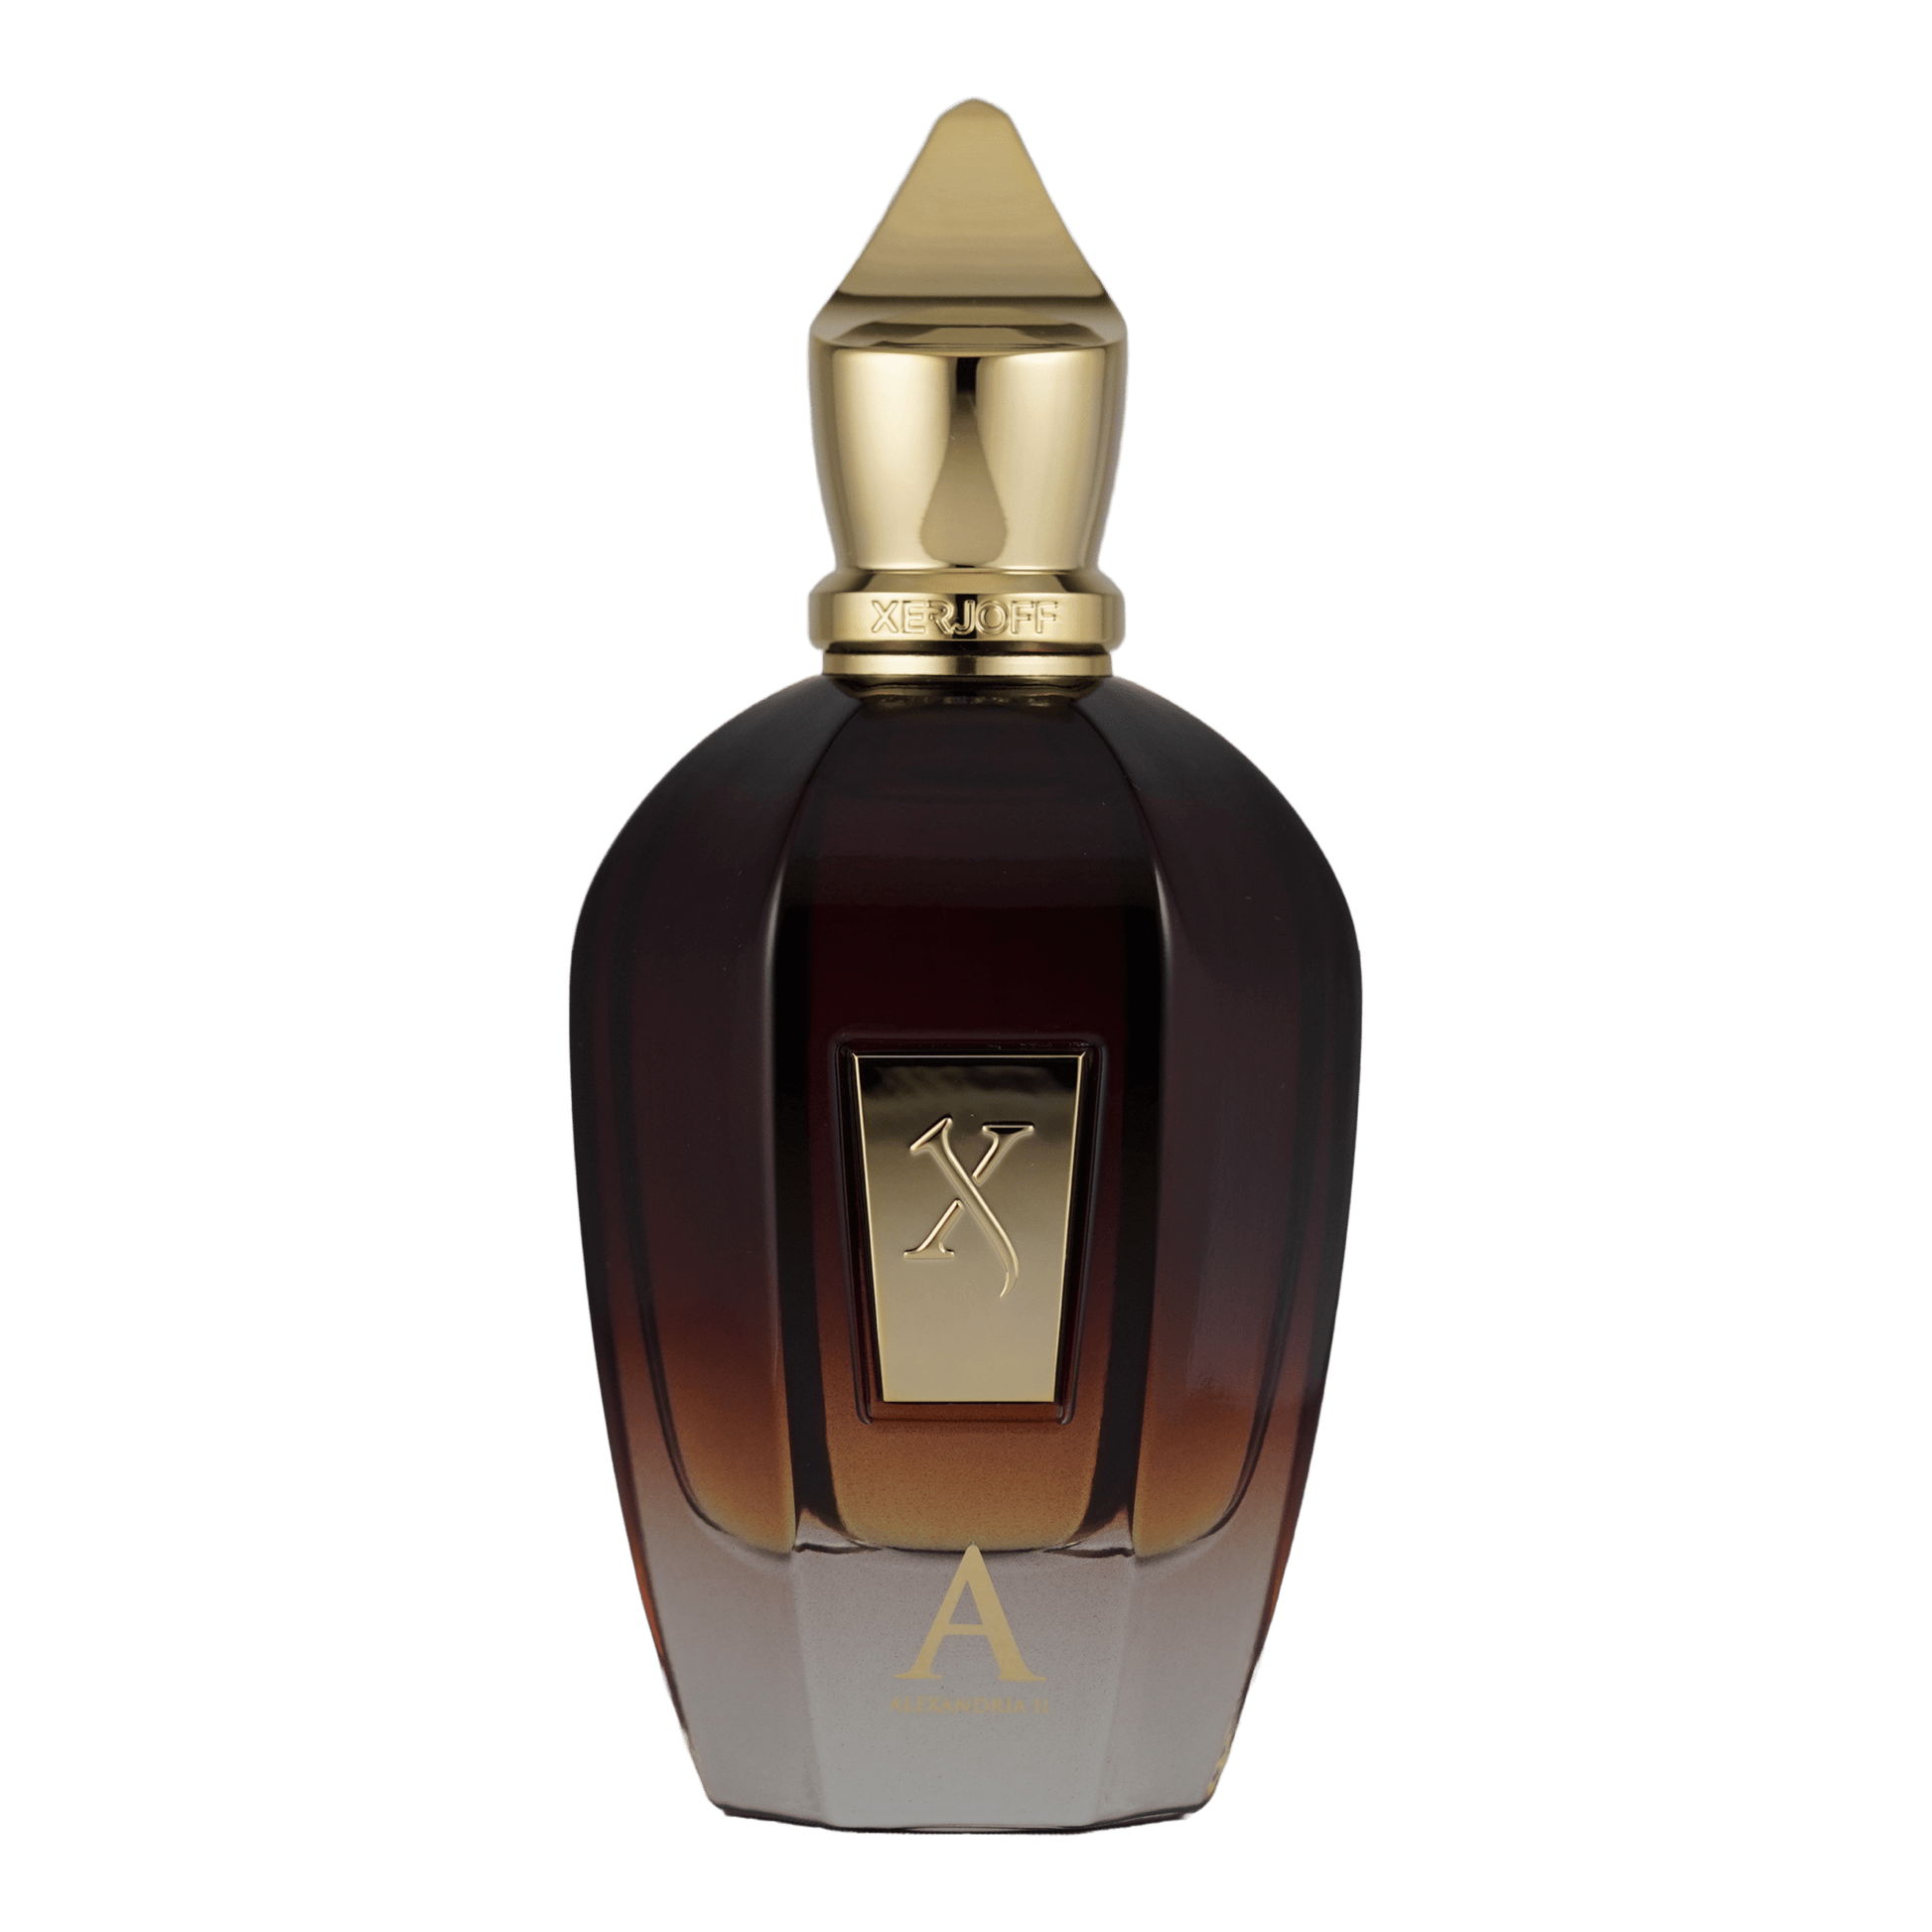 Ein Bild des Parfüms Alexandria 2 aus der Oud Stars Kollektion von Xerjoff angeboten als Duftprobe